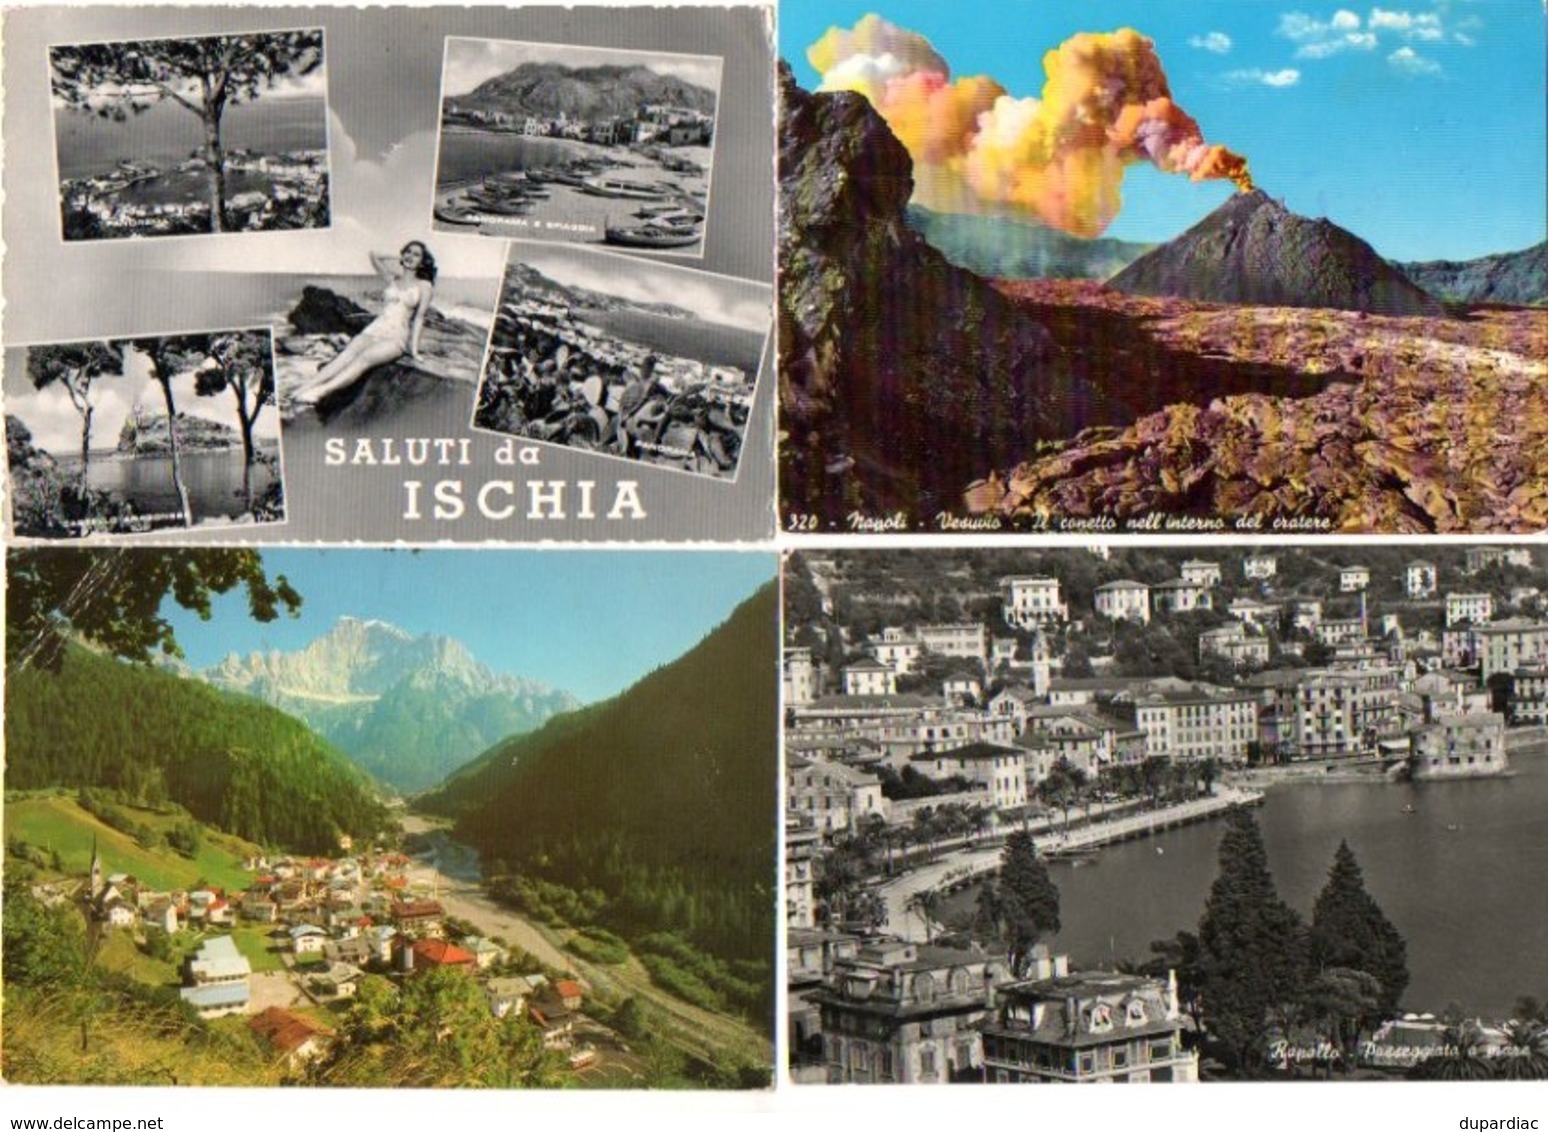 Italie / Au premier acheteur, LOT de cartes postales d'ITALIE et carnets : plus de 1360 vues différentes, très bon état.